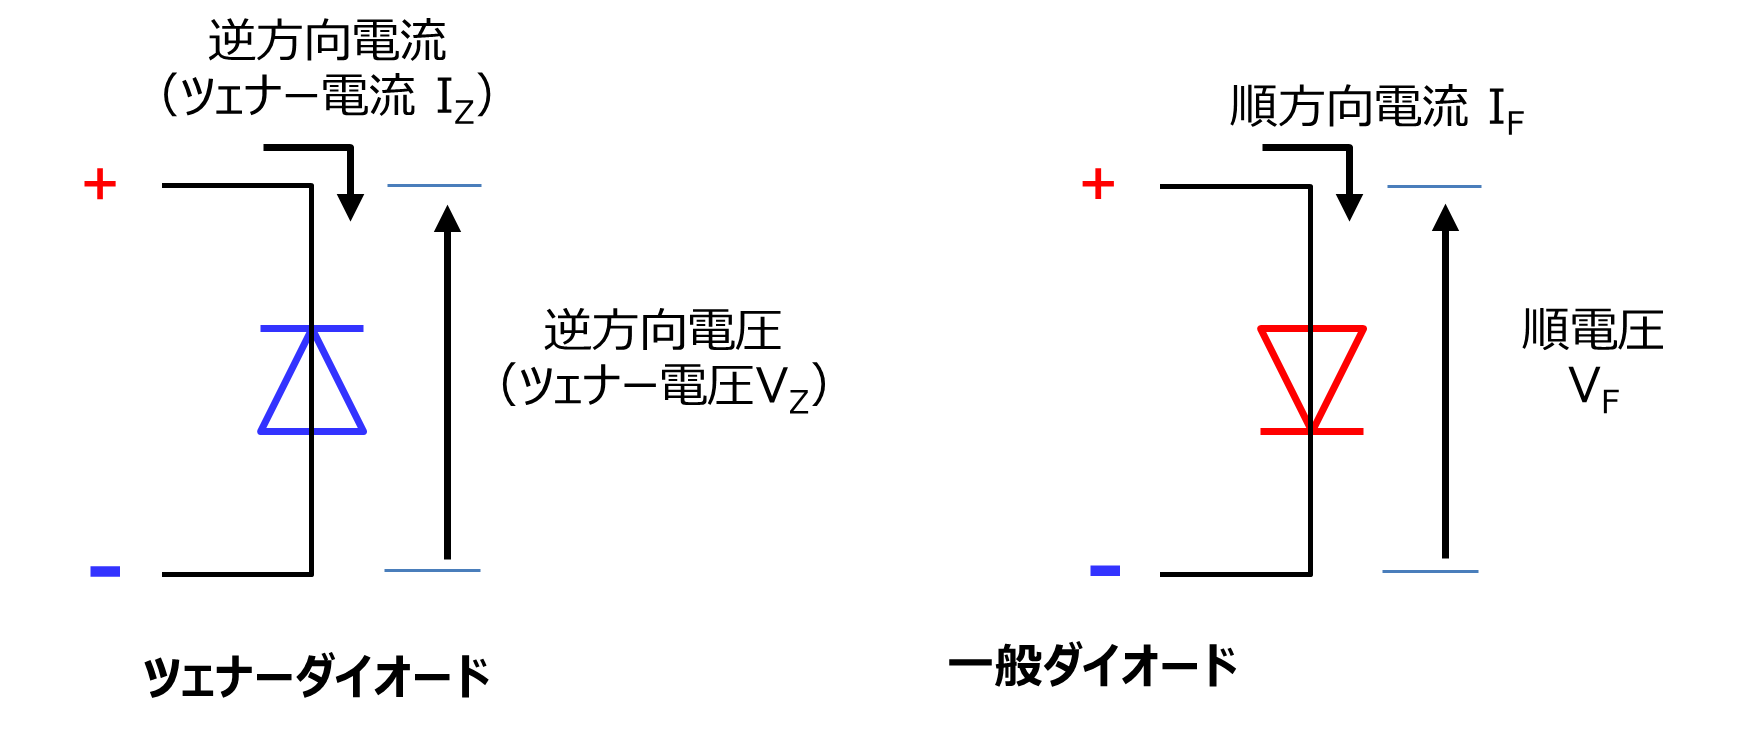 図-2　ダイオードの電圧と電流の定義